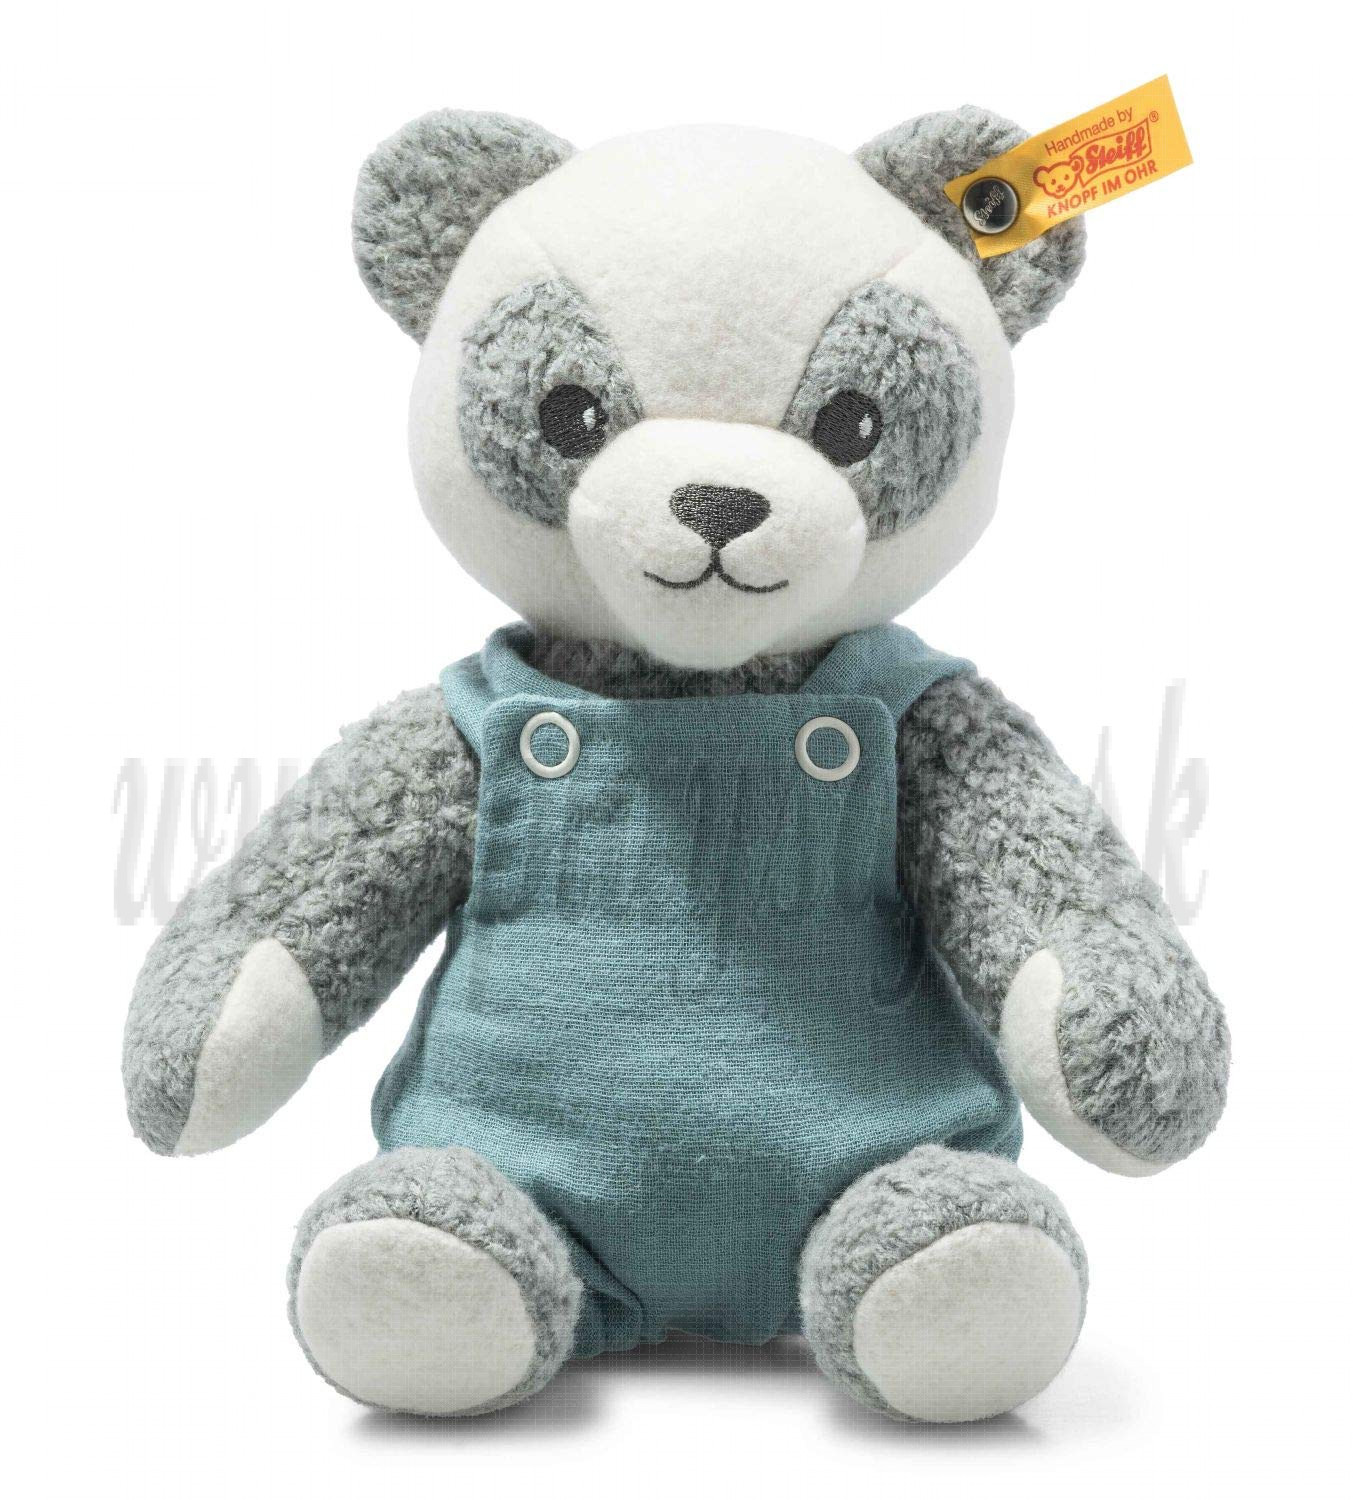 Steiff GOTS Paco panda baby soft toy, 26cm